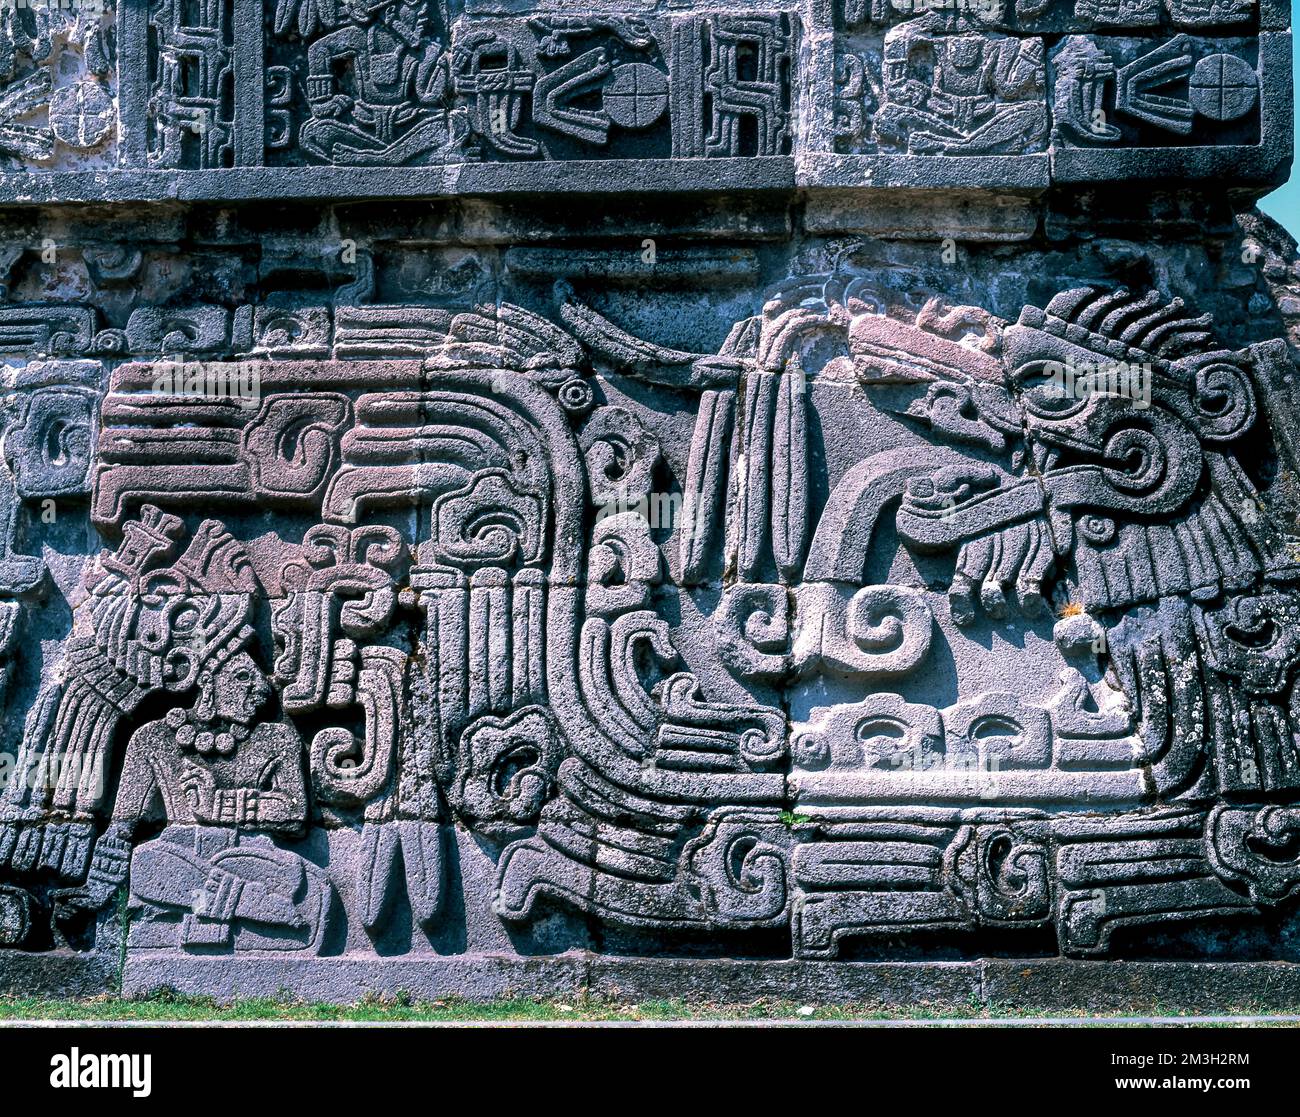 Archäologische Stätte von Xochicalco, Morelos, Mexiko. Stockfoto